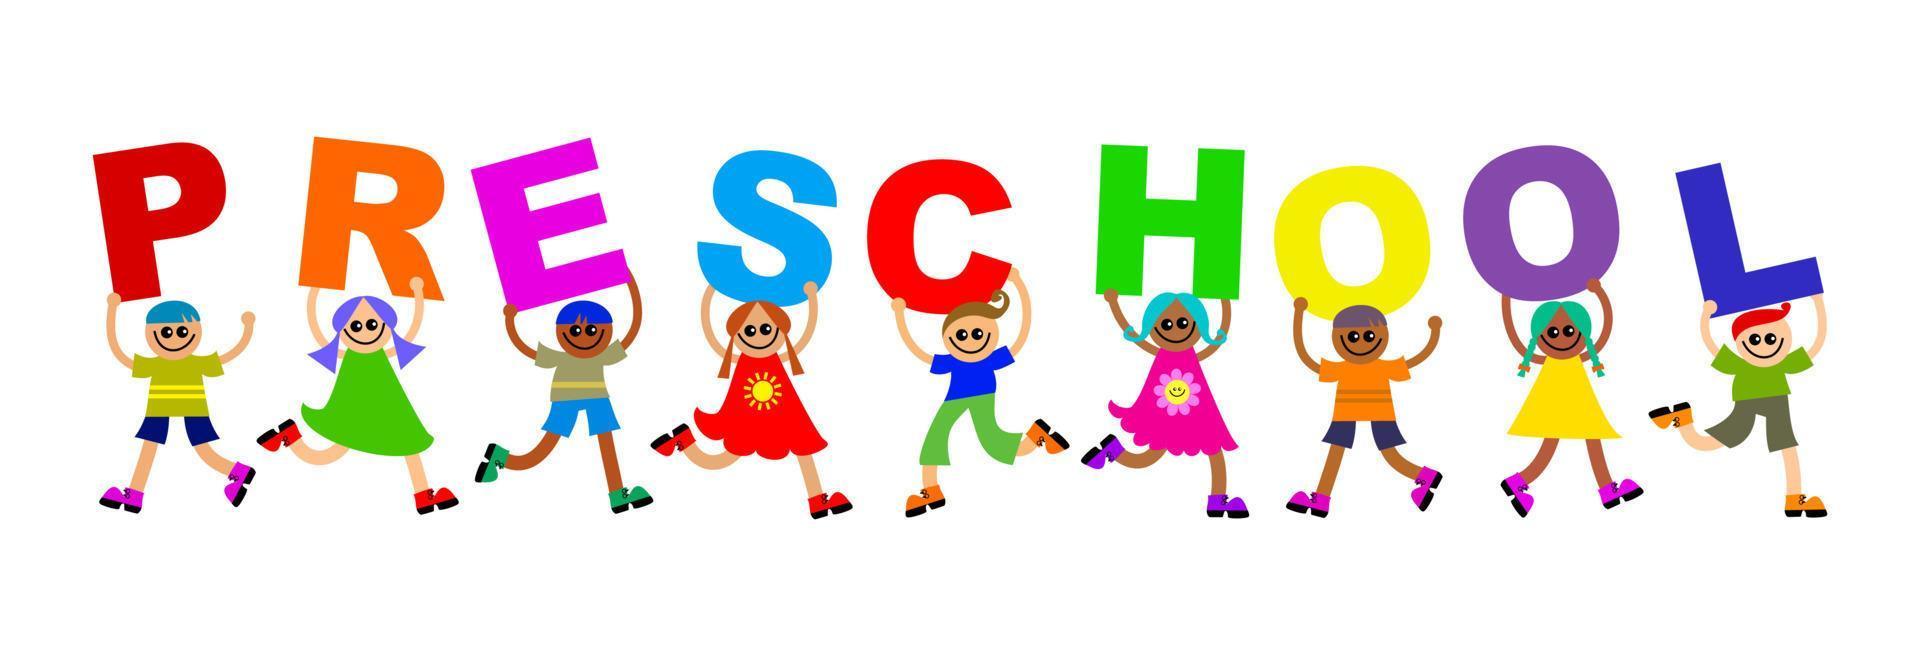 Preschool Kids Happy Community Text vector